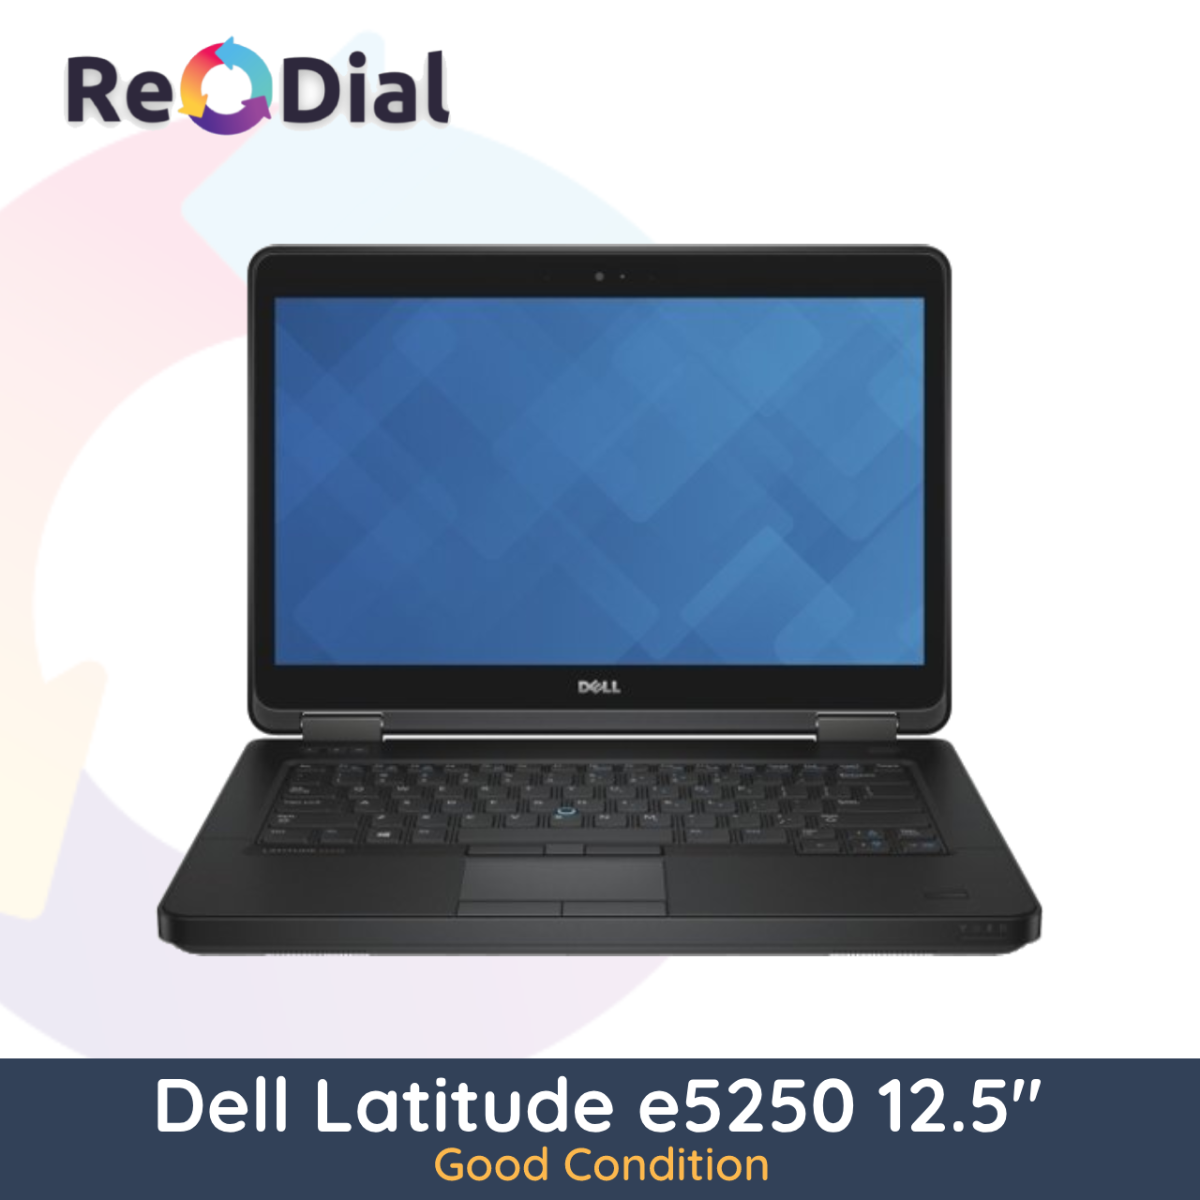 Dell Latitude E5250 12.5" Laptop i5-4310U 256GB 8GB RAM - Good Condition